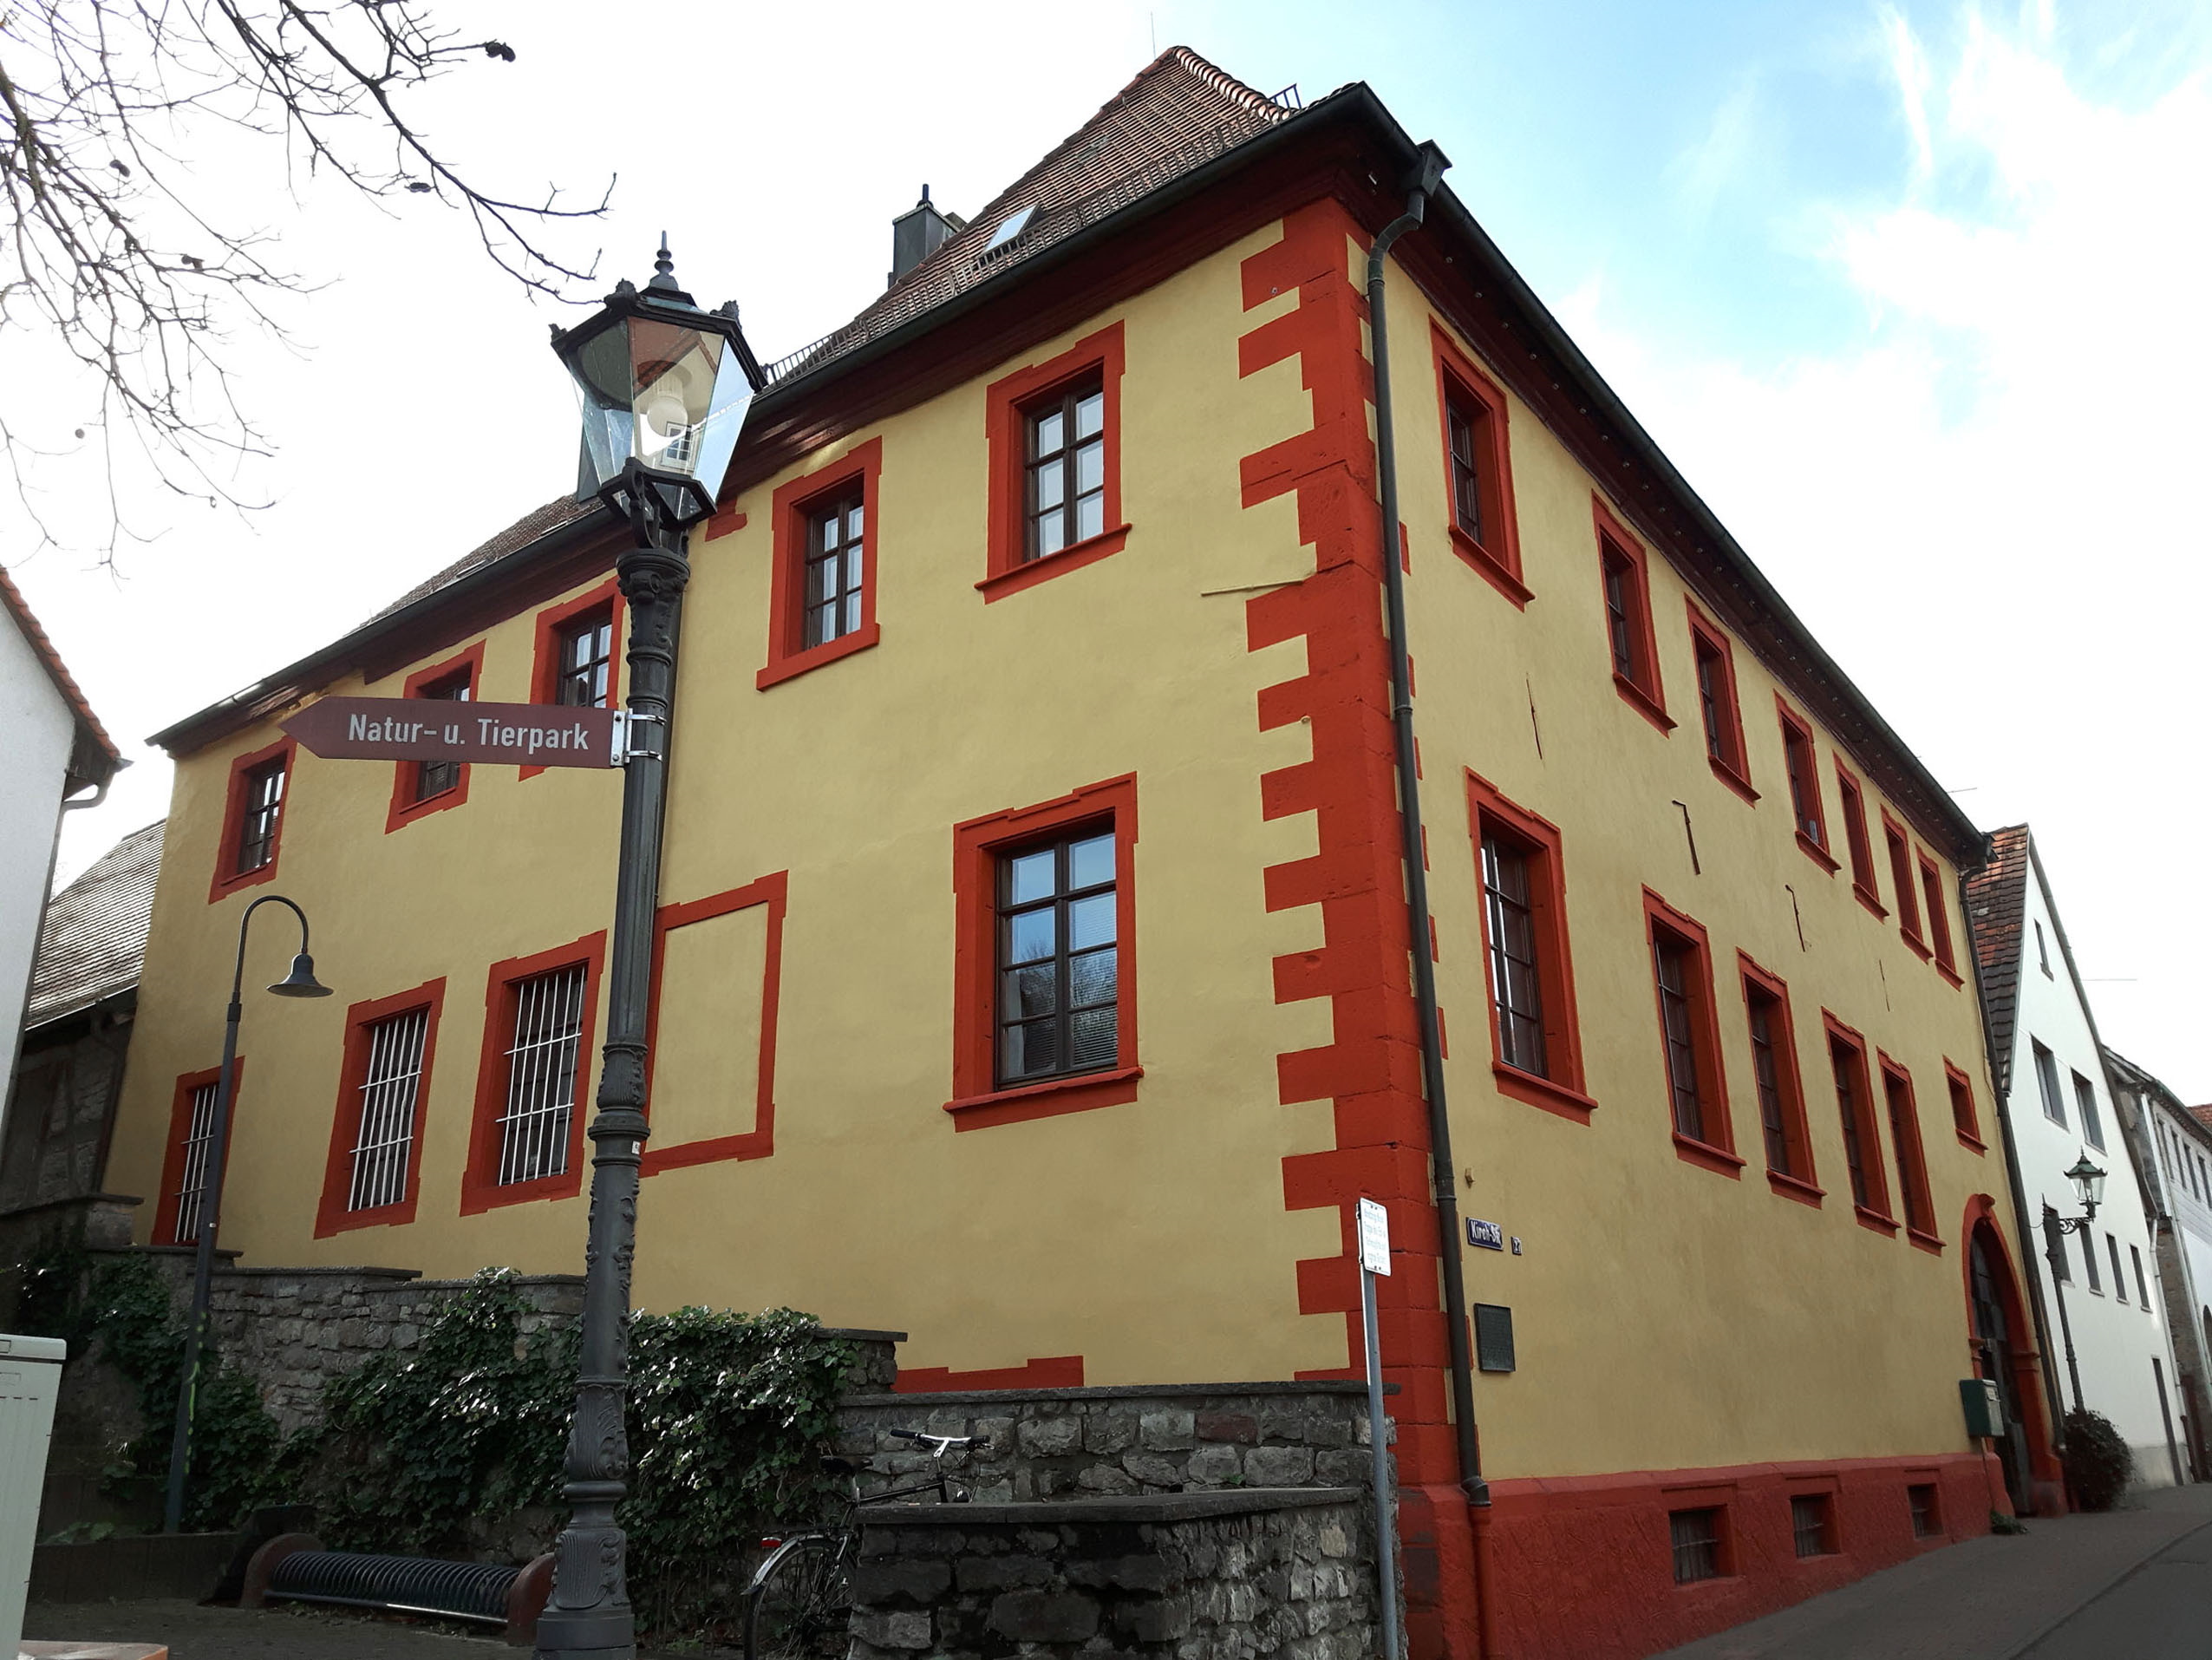  Das ehemalige katholische Schulhaus in der Kirchstraße 27, das heute der Familie Krumes gehört, öffnet am „Tag des offenen Denkmals“ seine Pforten. Fotos: Daul 